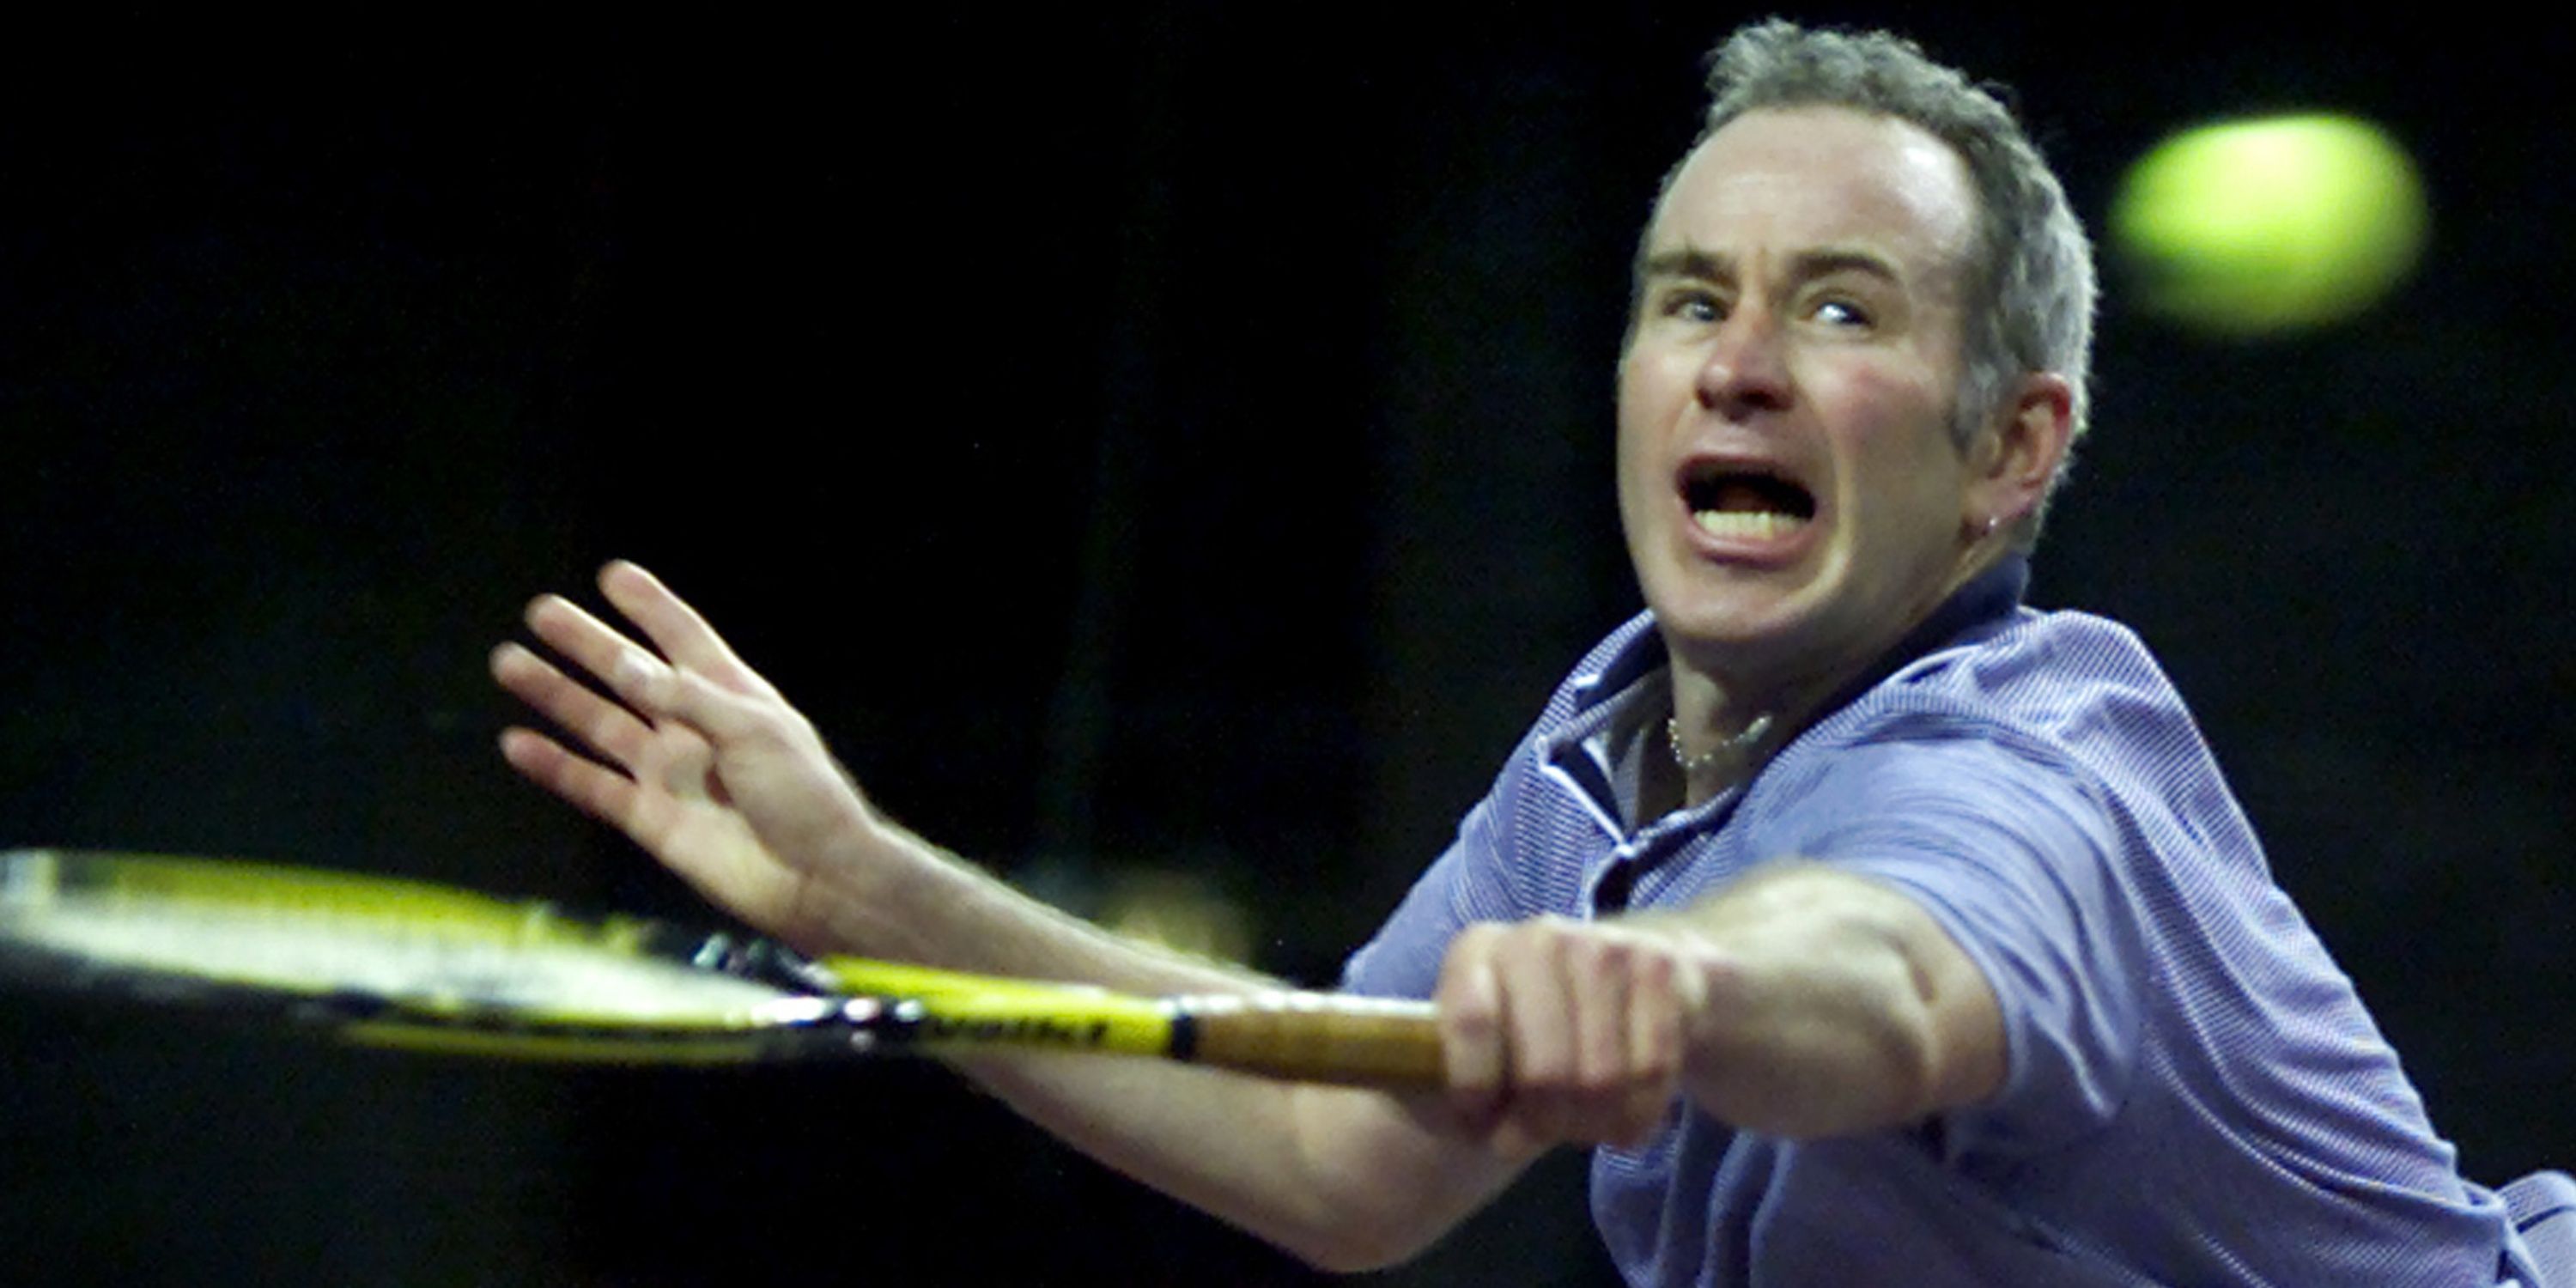 John McEnroe in action.